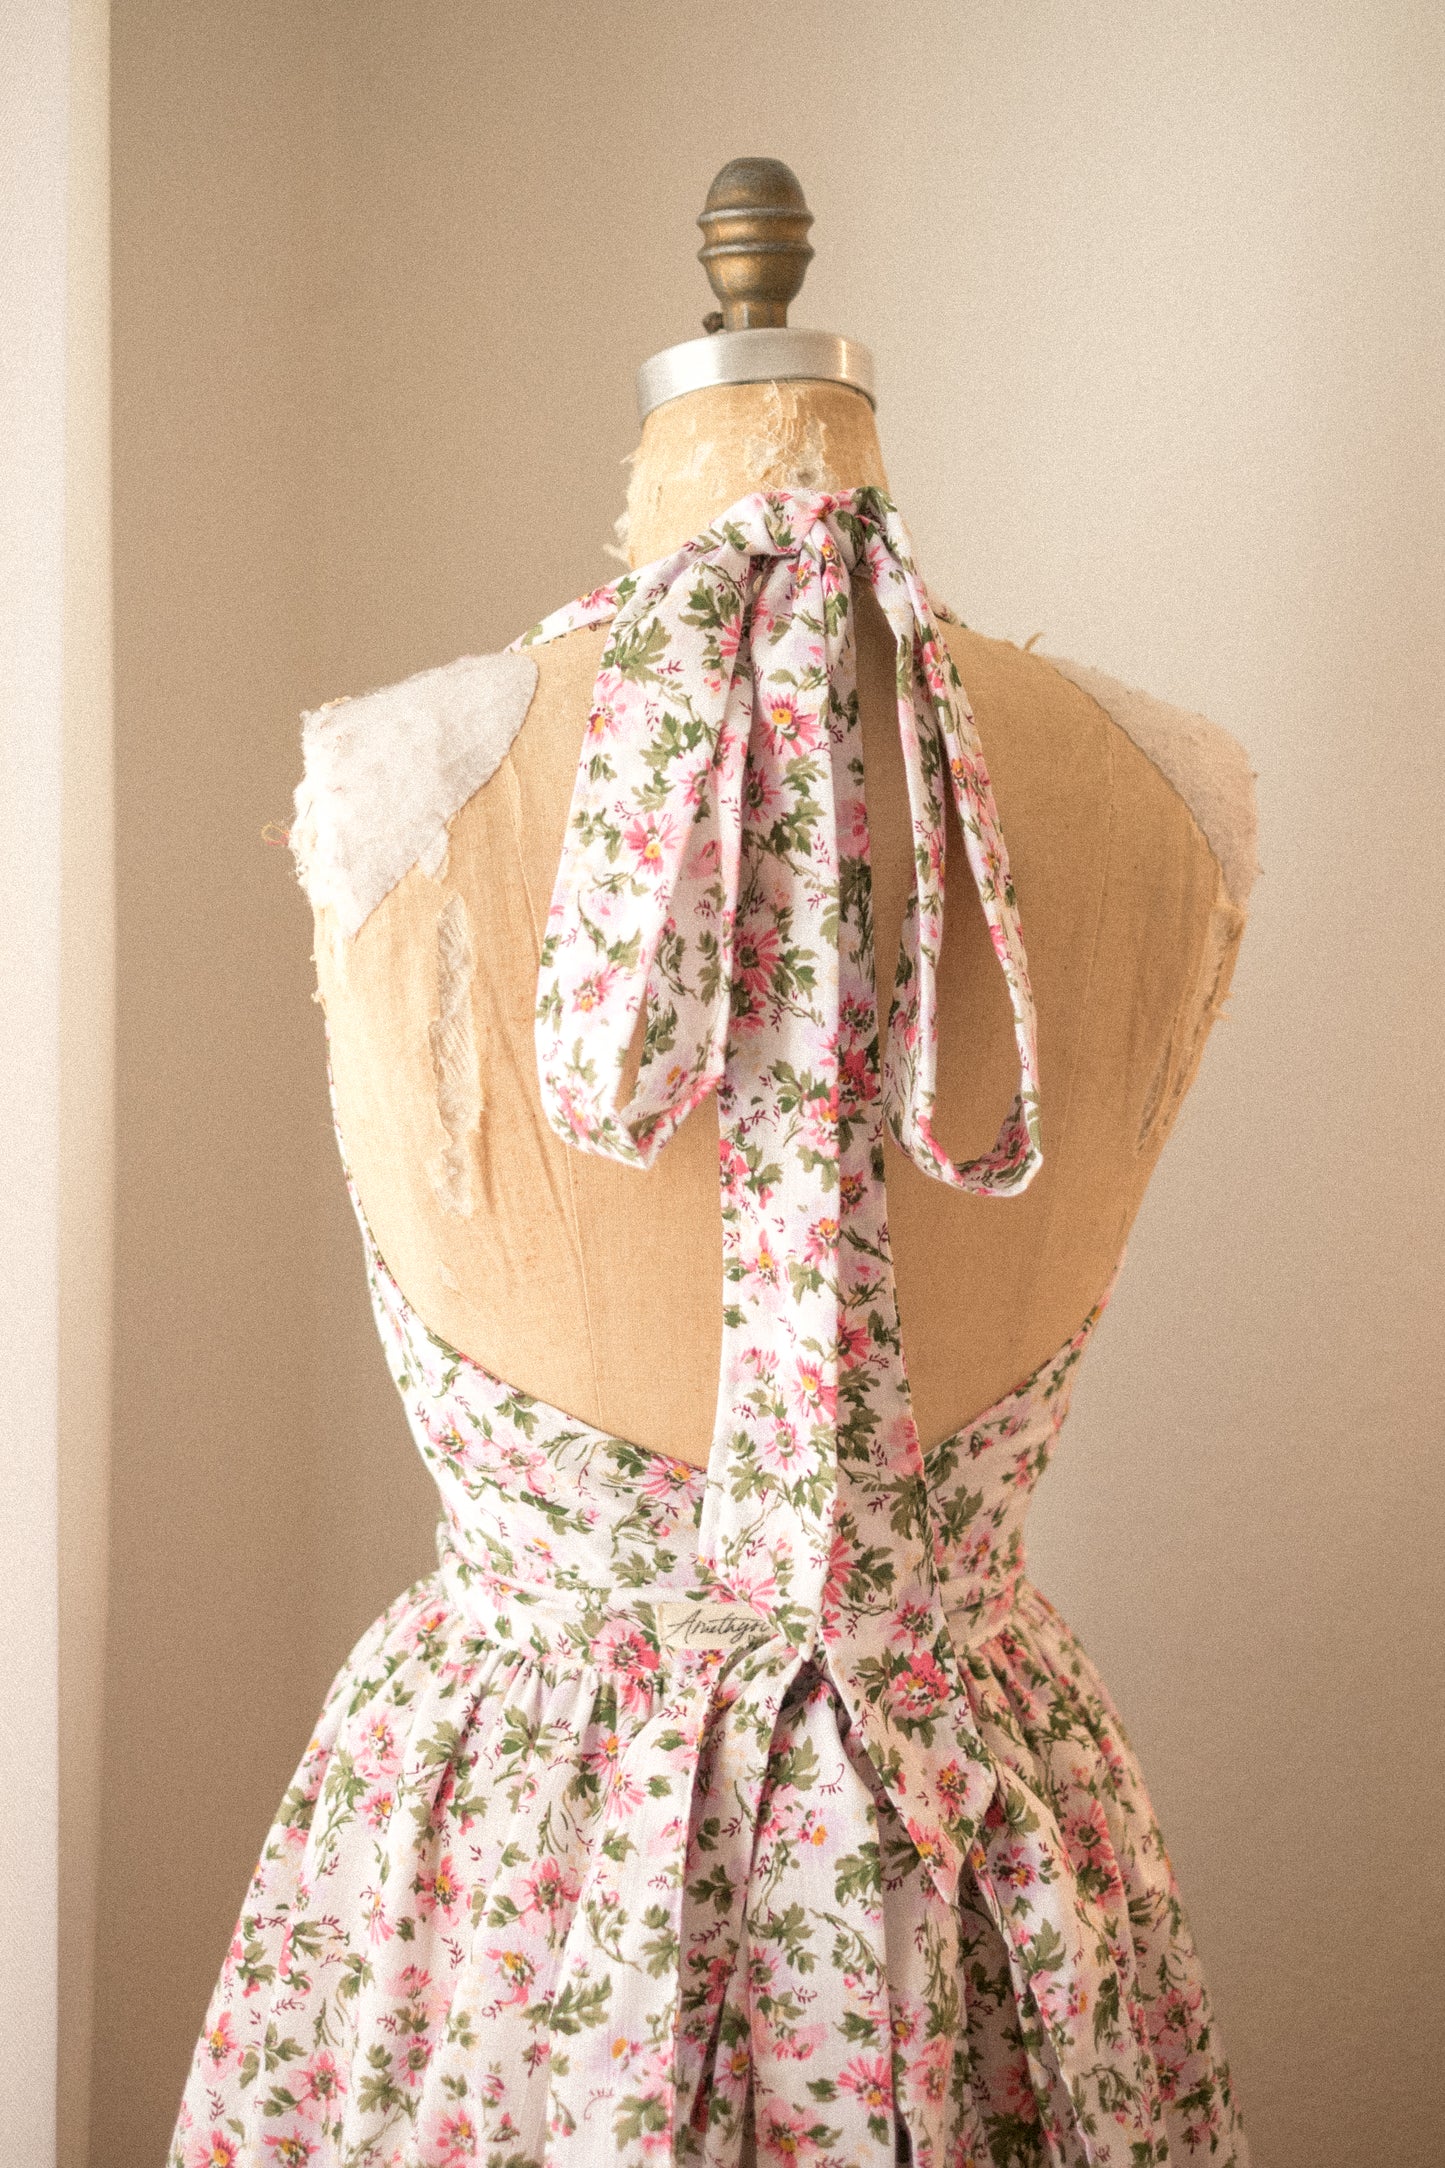 Handmade vintage floral apron - old rose